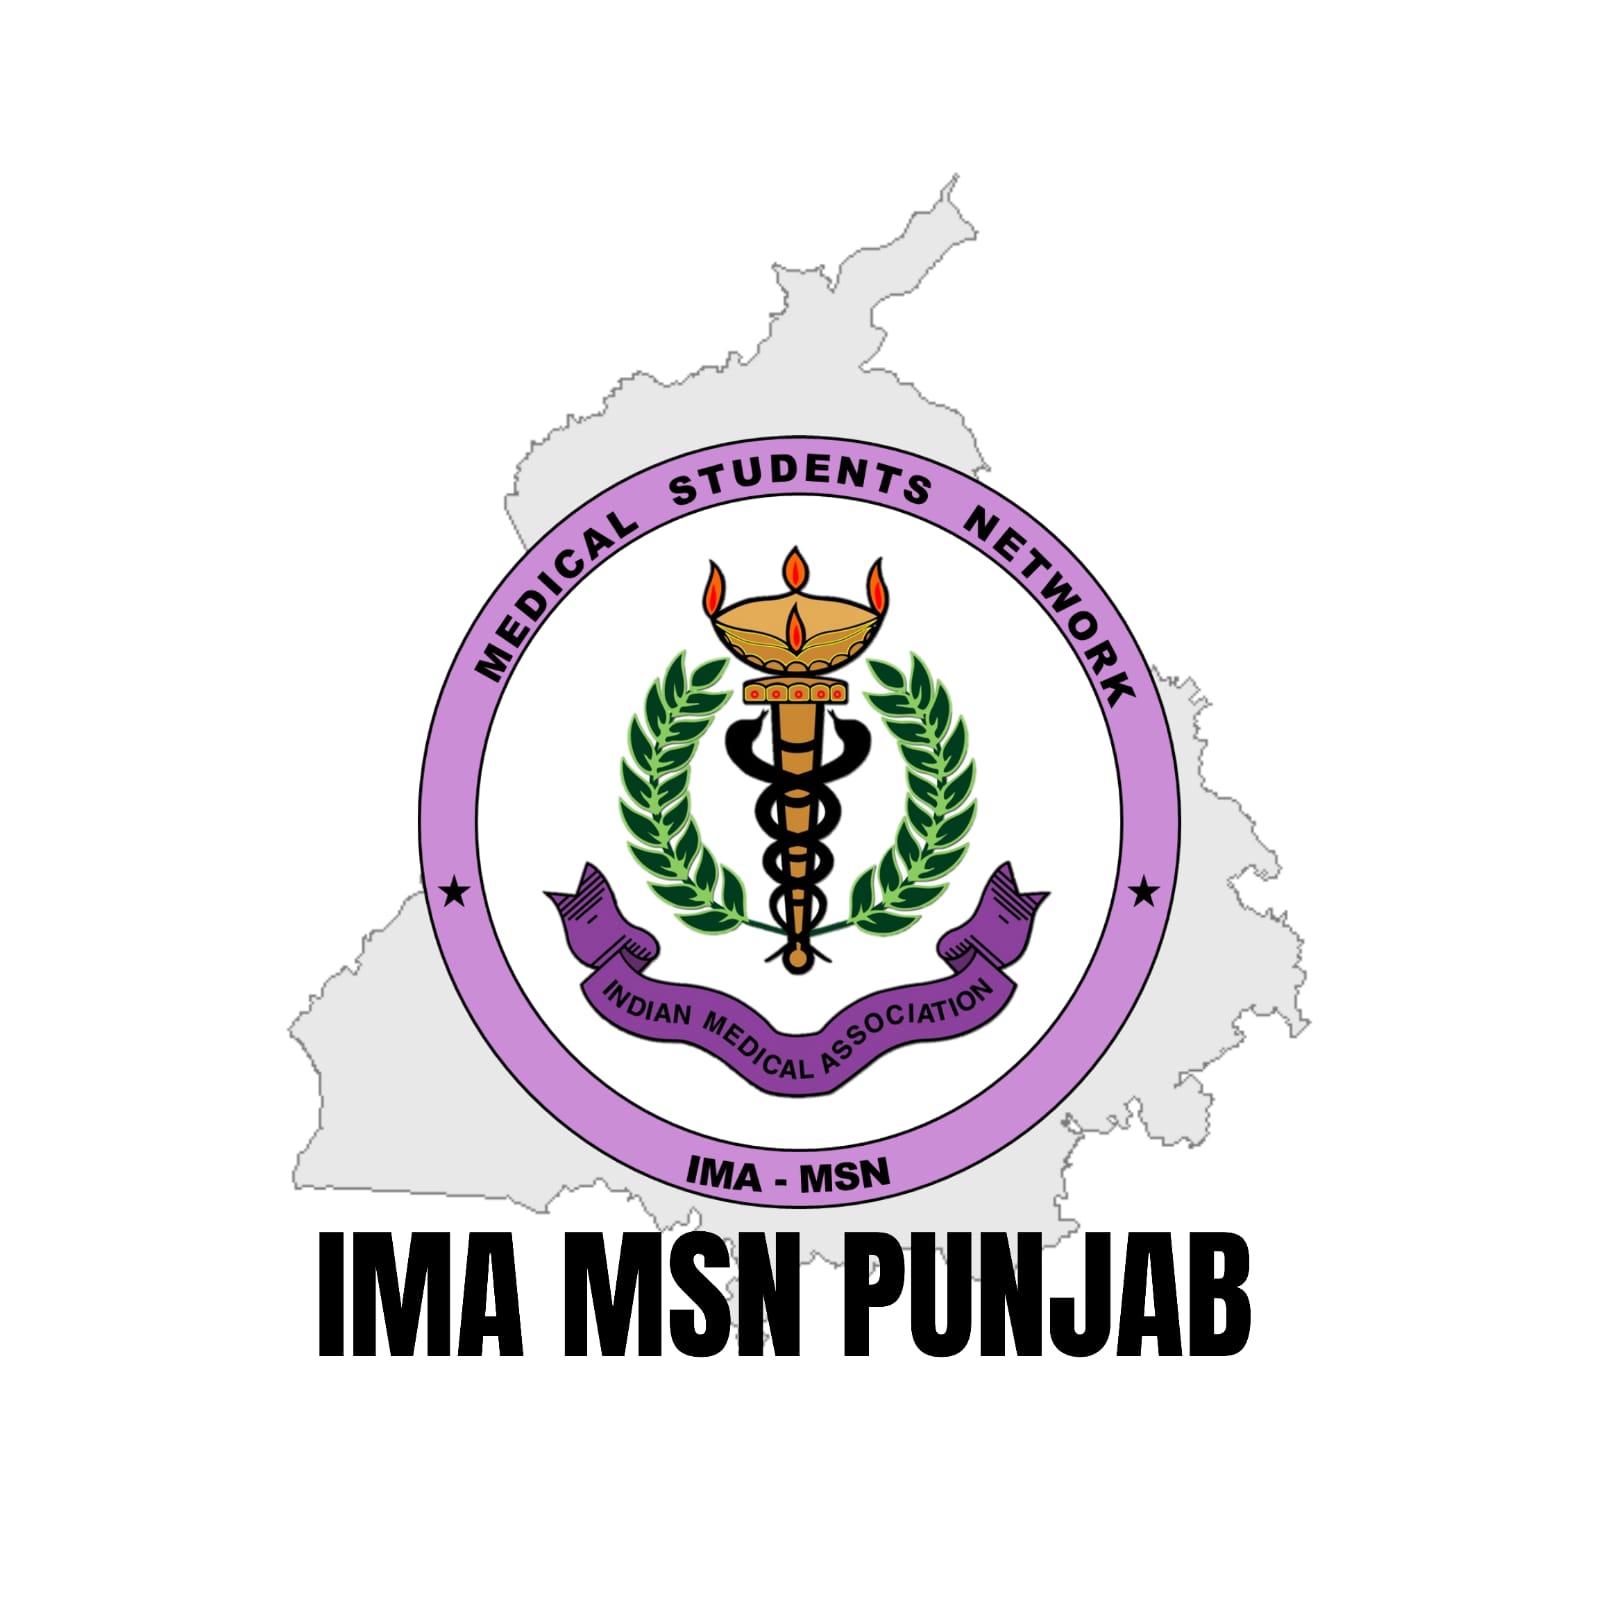 INDIAN MEDICAL ASSOCIATION MEDICAL STUDENTS NETWORK - PUNJAB